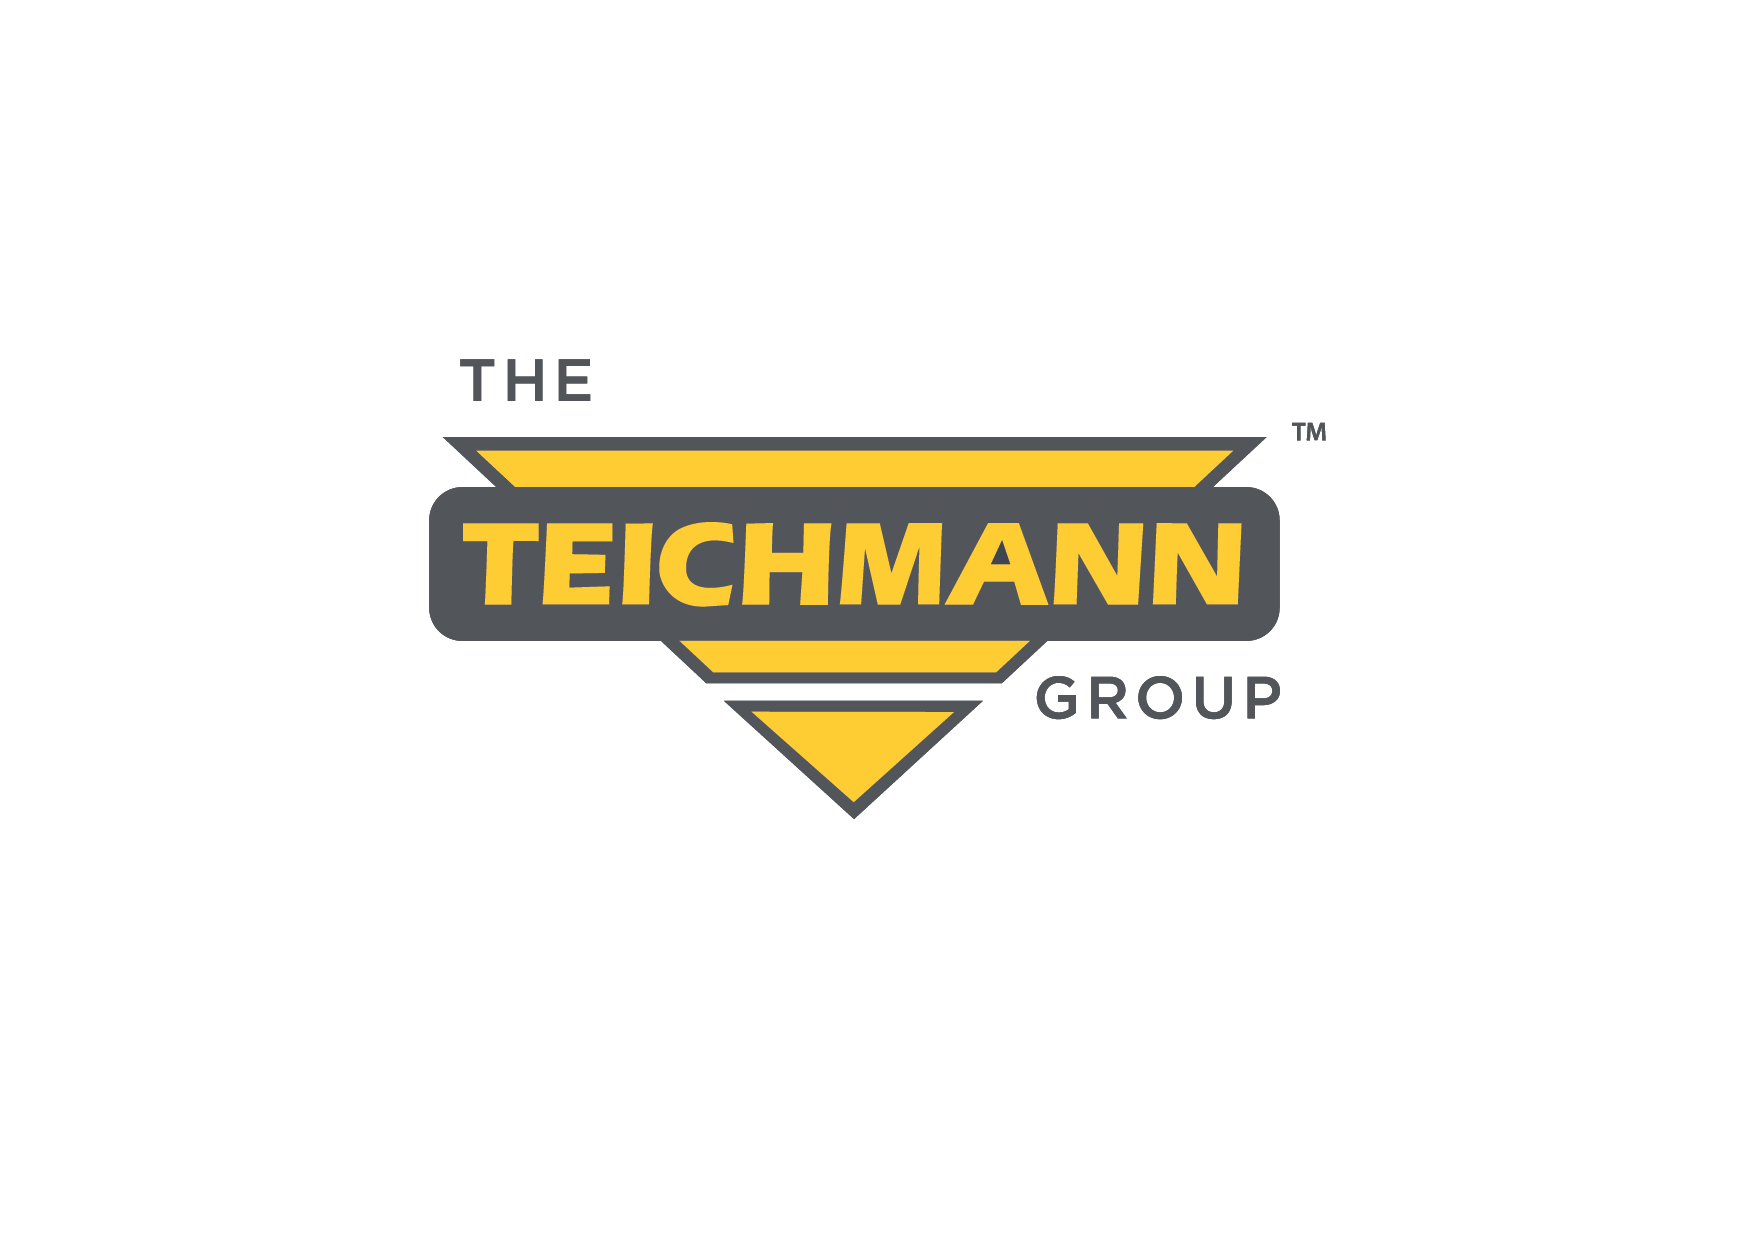 The Teichmann Group